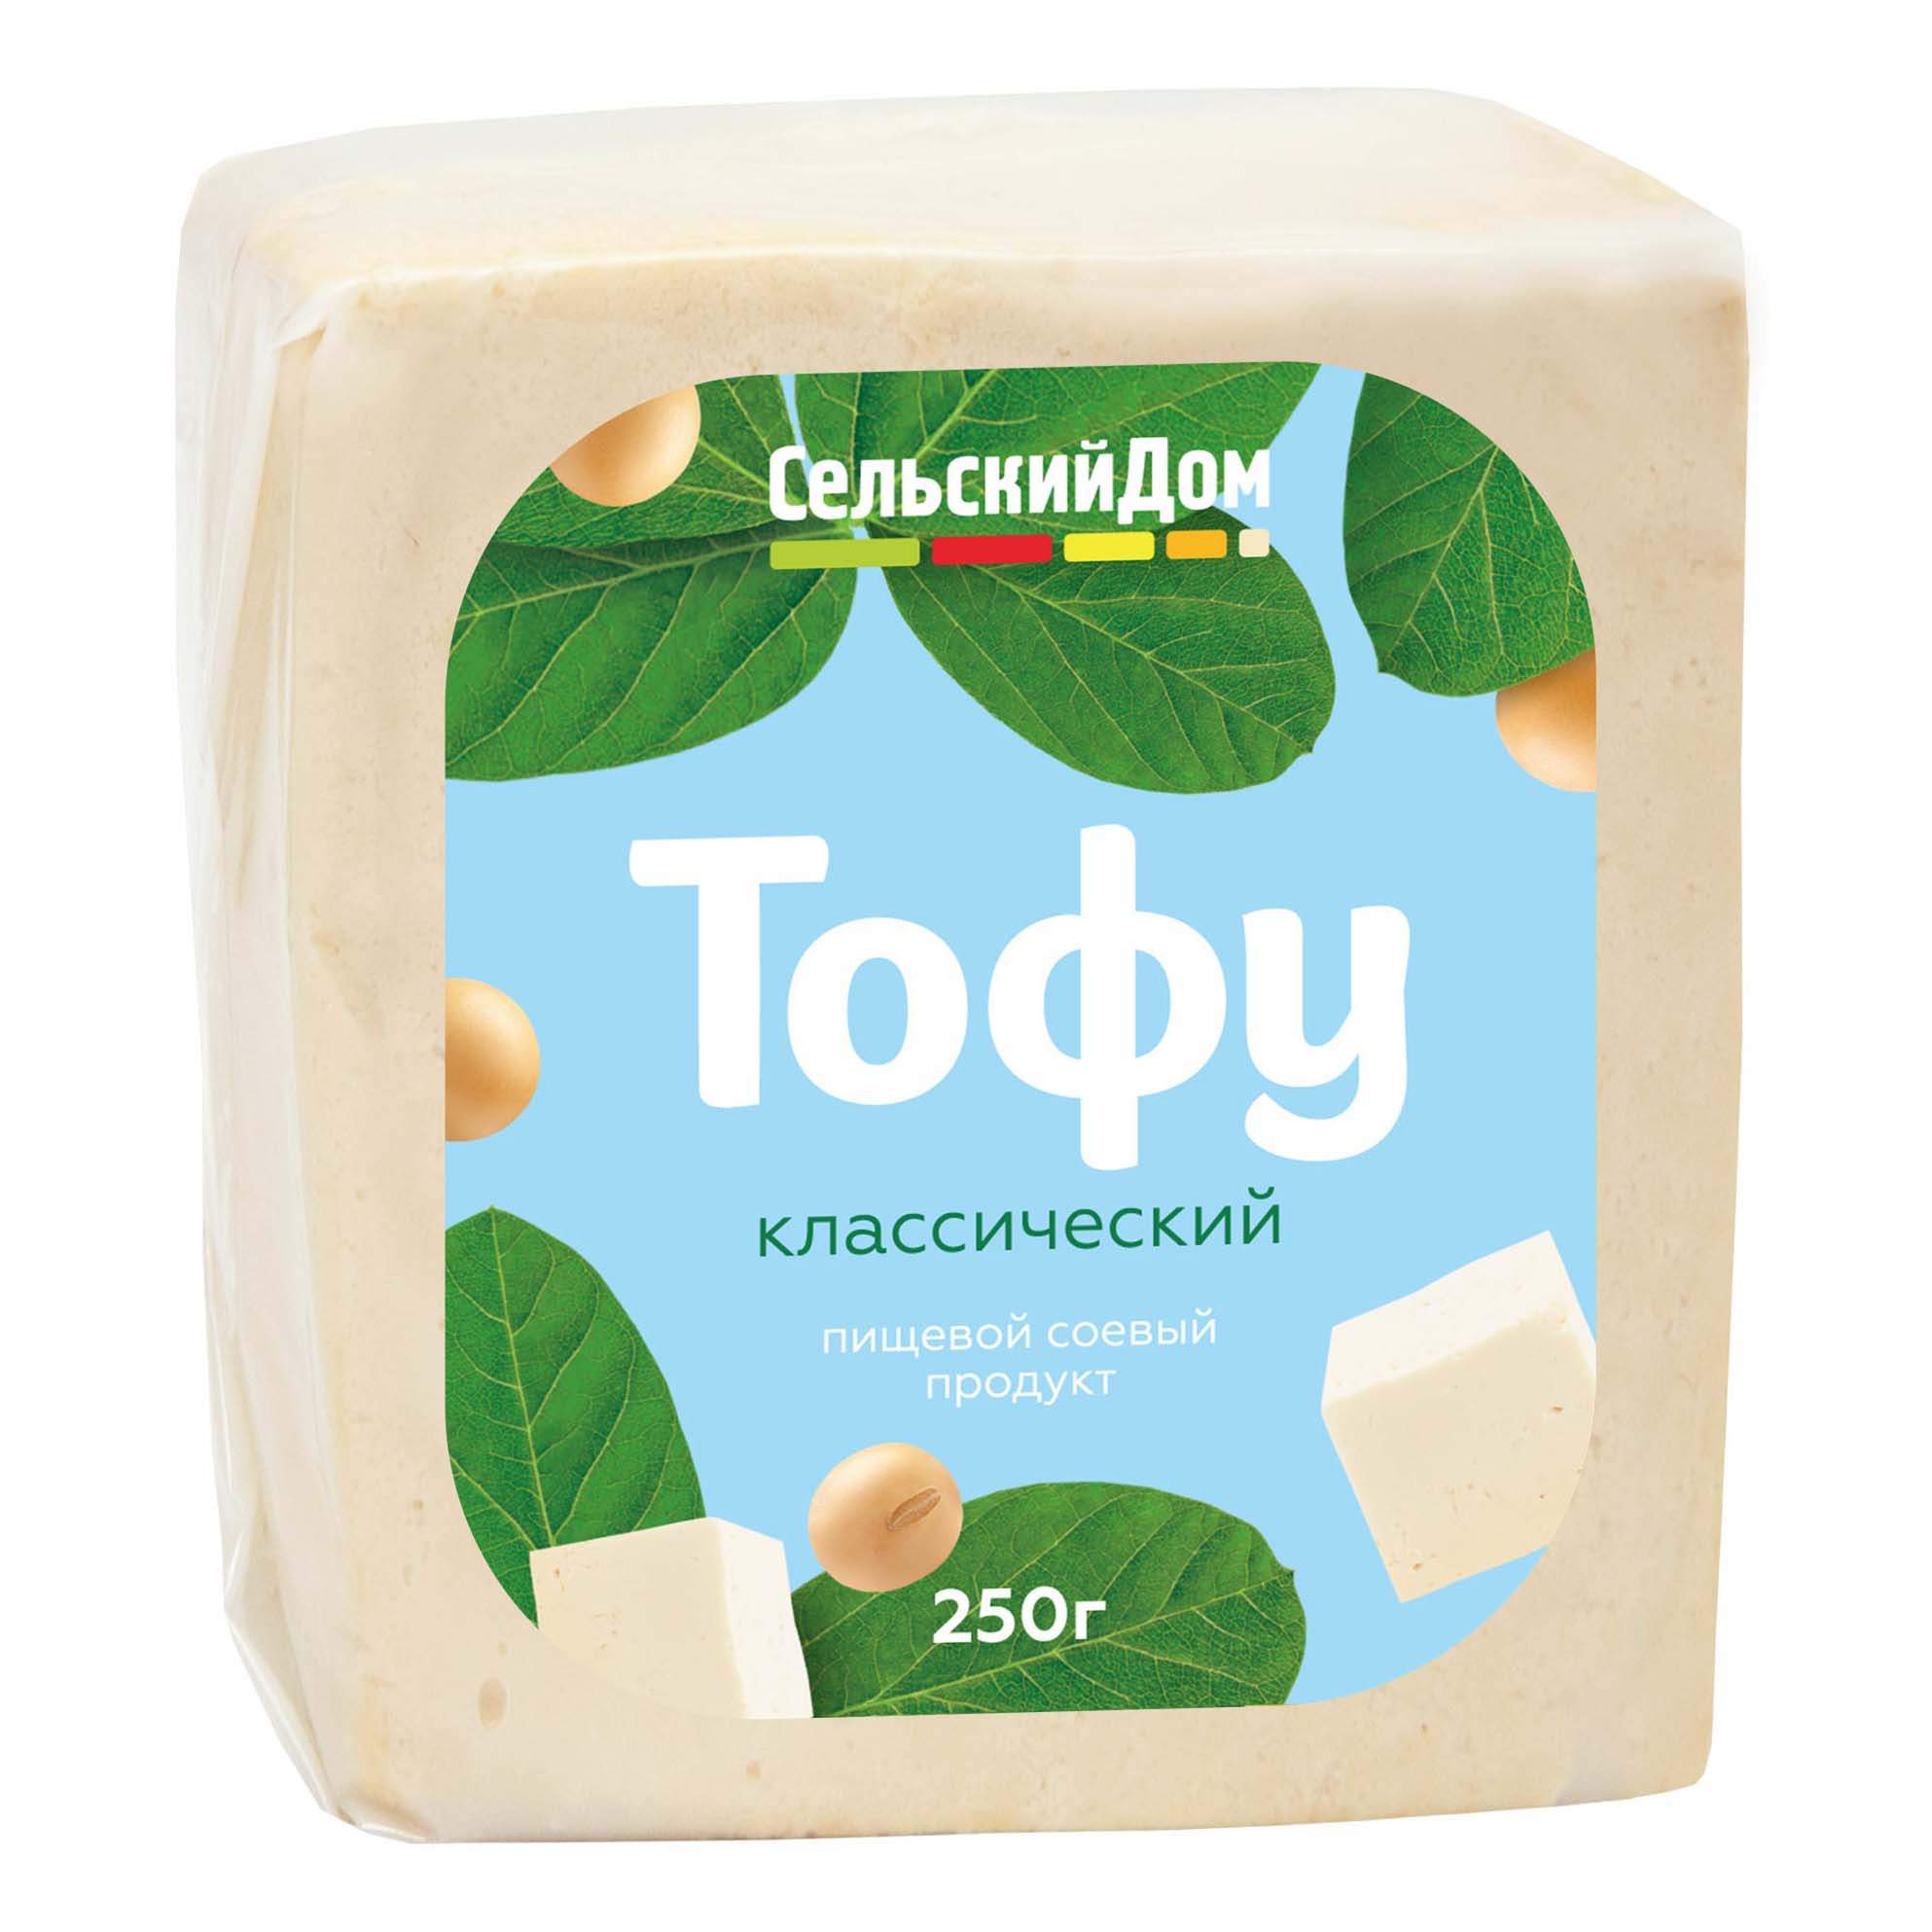 Купить растительный аналог сыра Сельский Дом Тофу классический 4,8%0 г, цены на Мегамаркет | Артикул: 100044289097